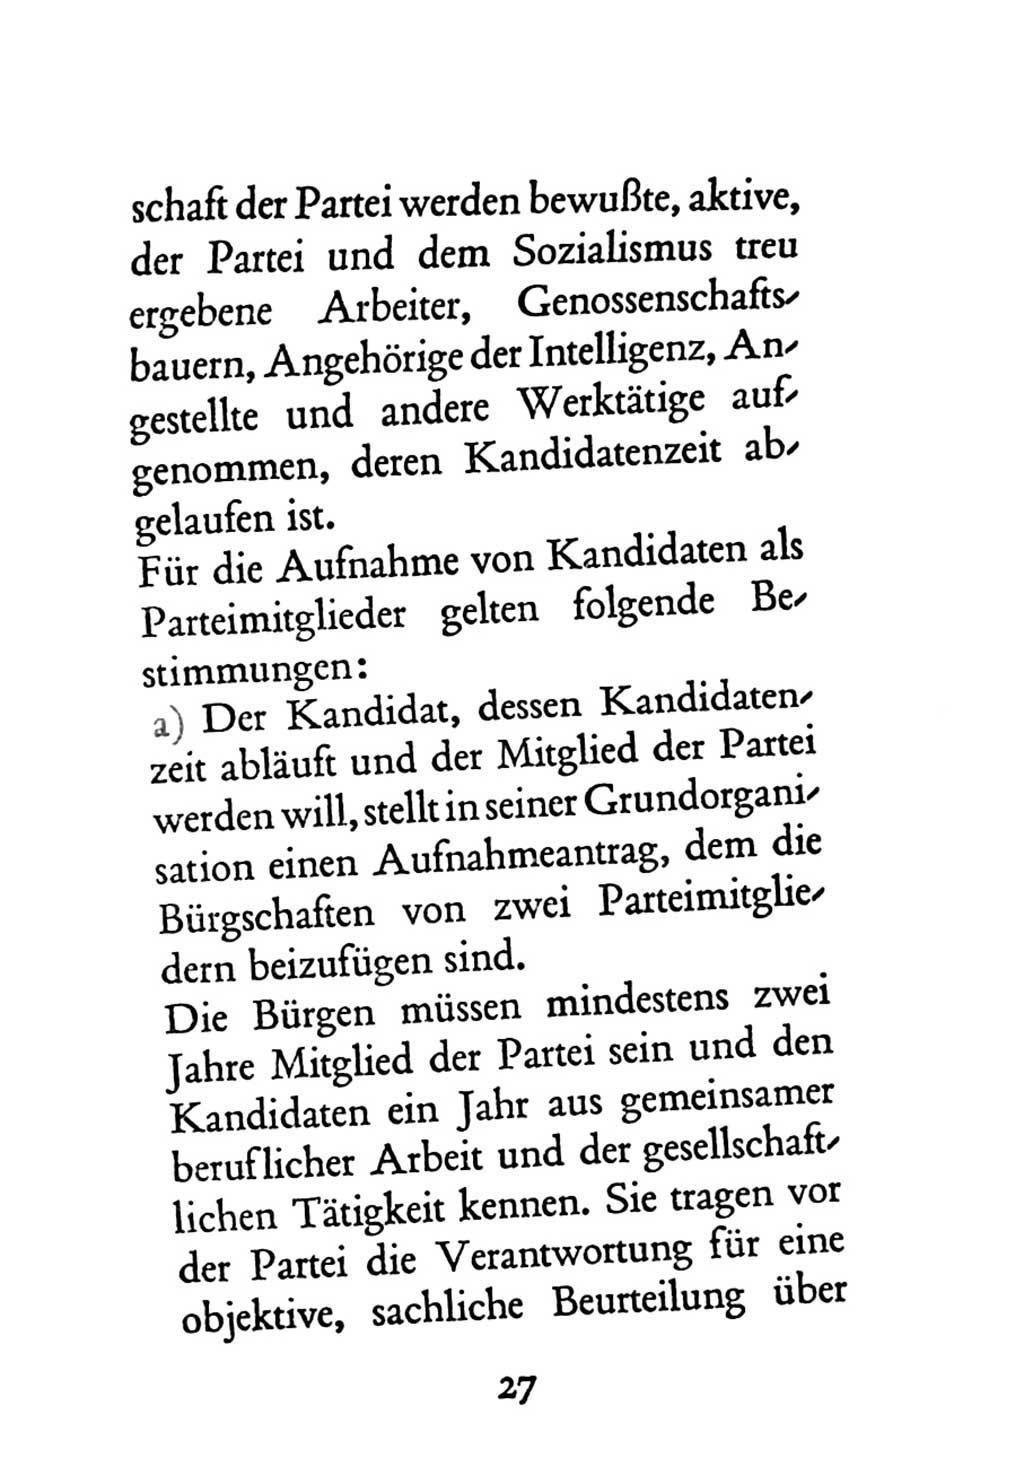 Statut der Sozialistischen Einheitspartei Deutschlands (SED) 1963, Seite 27 (St. SED DDR 1963, S. 27)